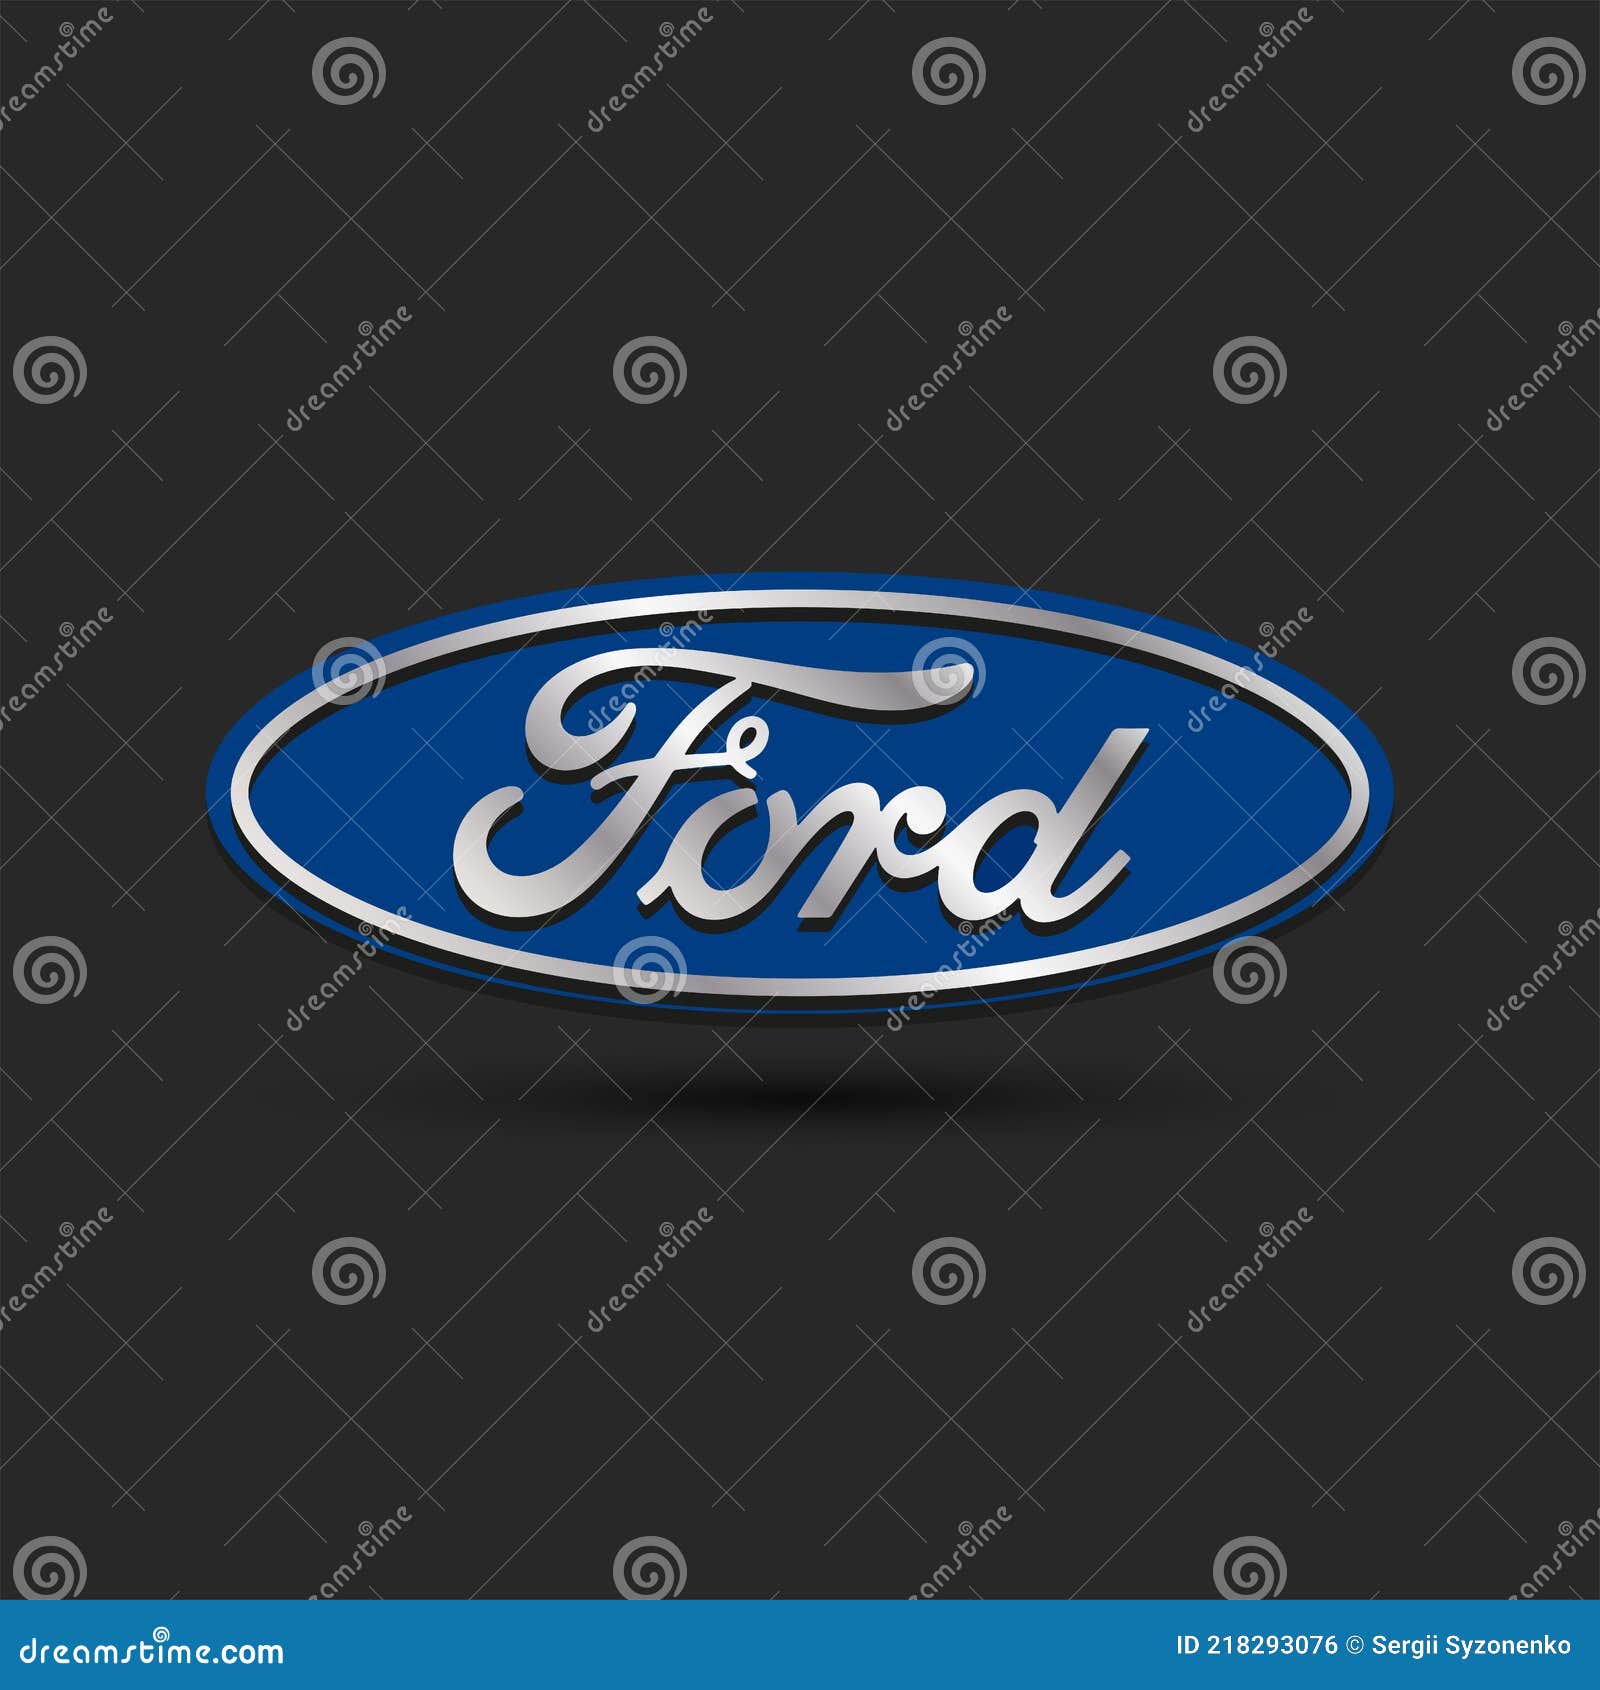 https://thumbs.dreamstime.com/z/ford-logo-d-effekt-kreatives-emblem-eines-amerikanischen-autos-auf-einem-schwarzen-hintergrund-218293076.jpg